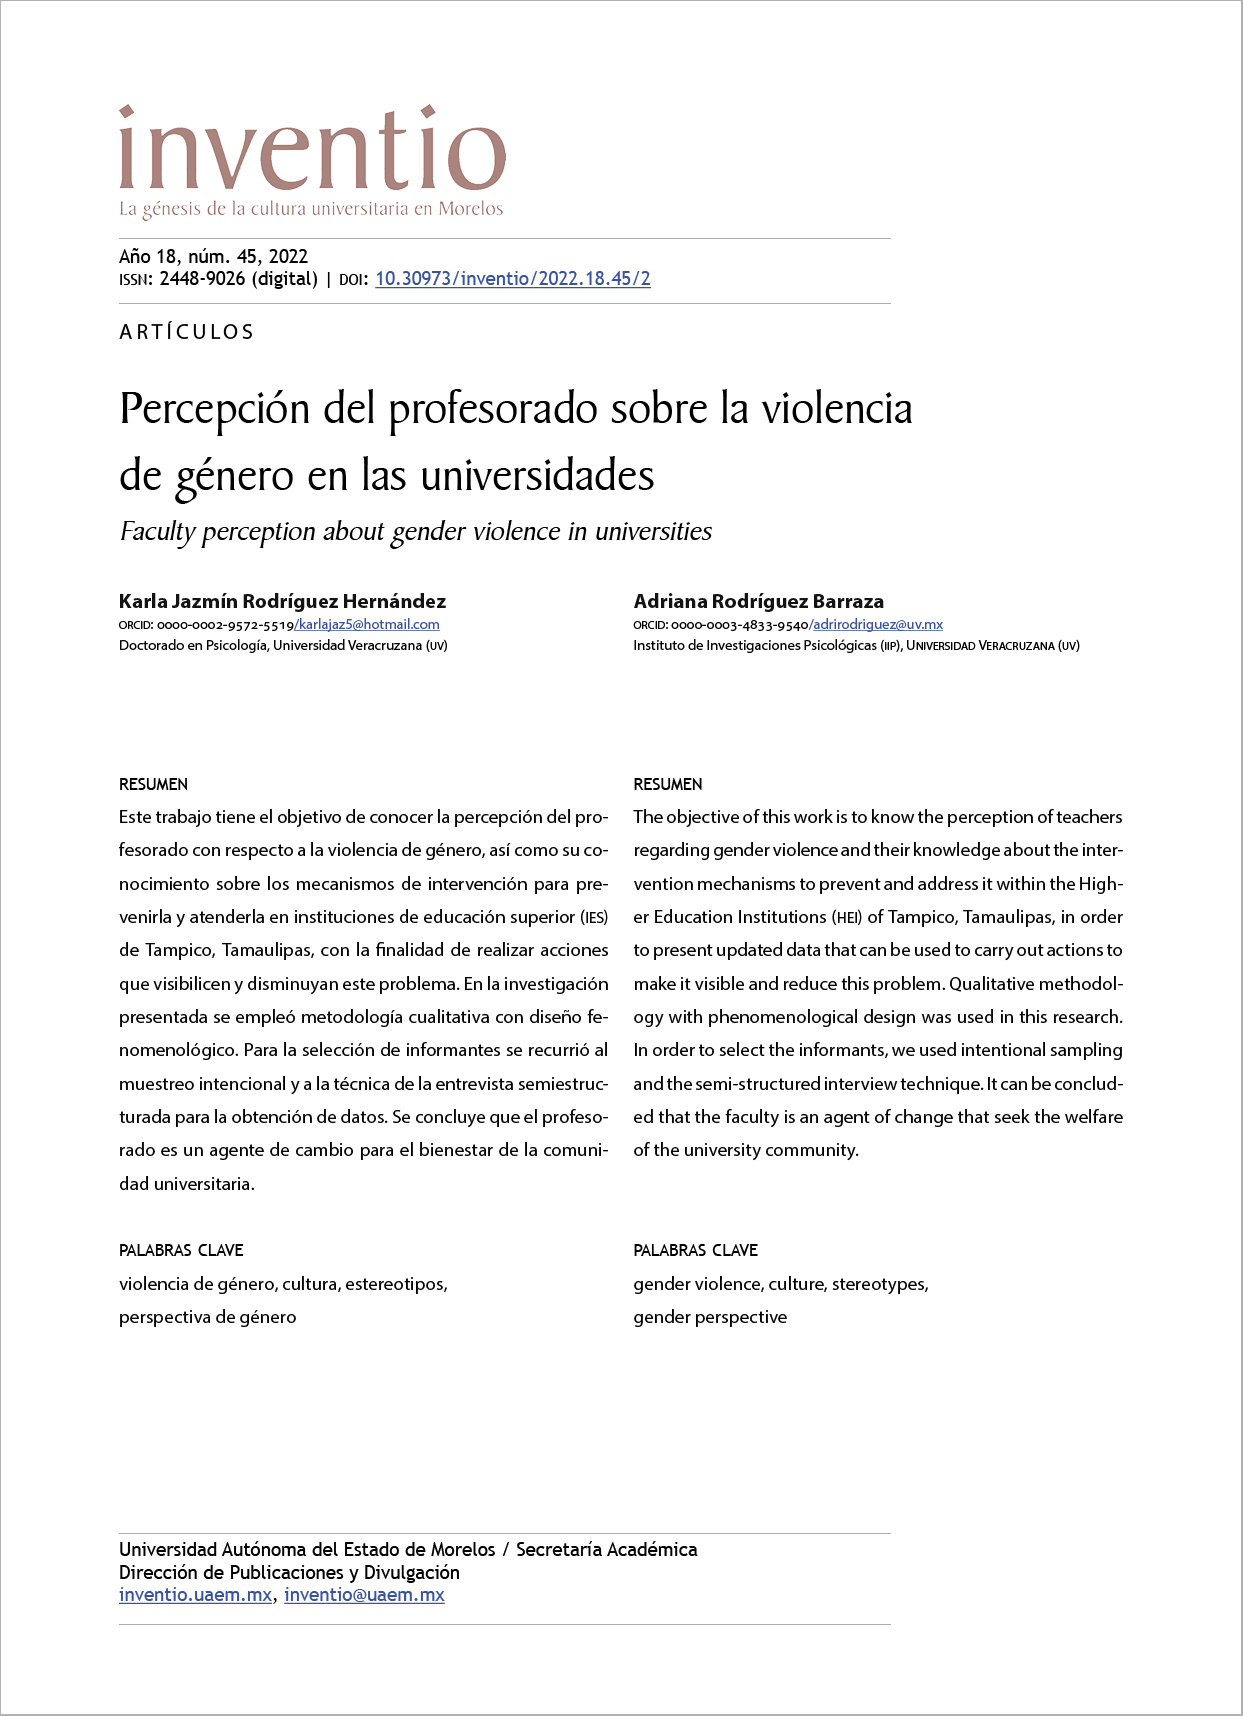 Percepción del profesorado sobre la violencia de género en las universidades